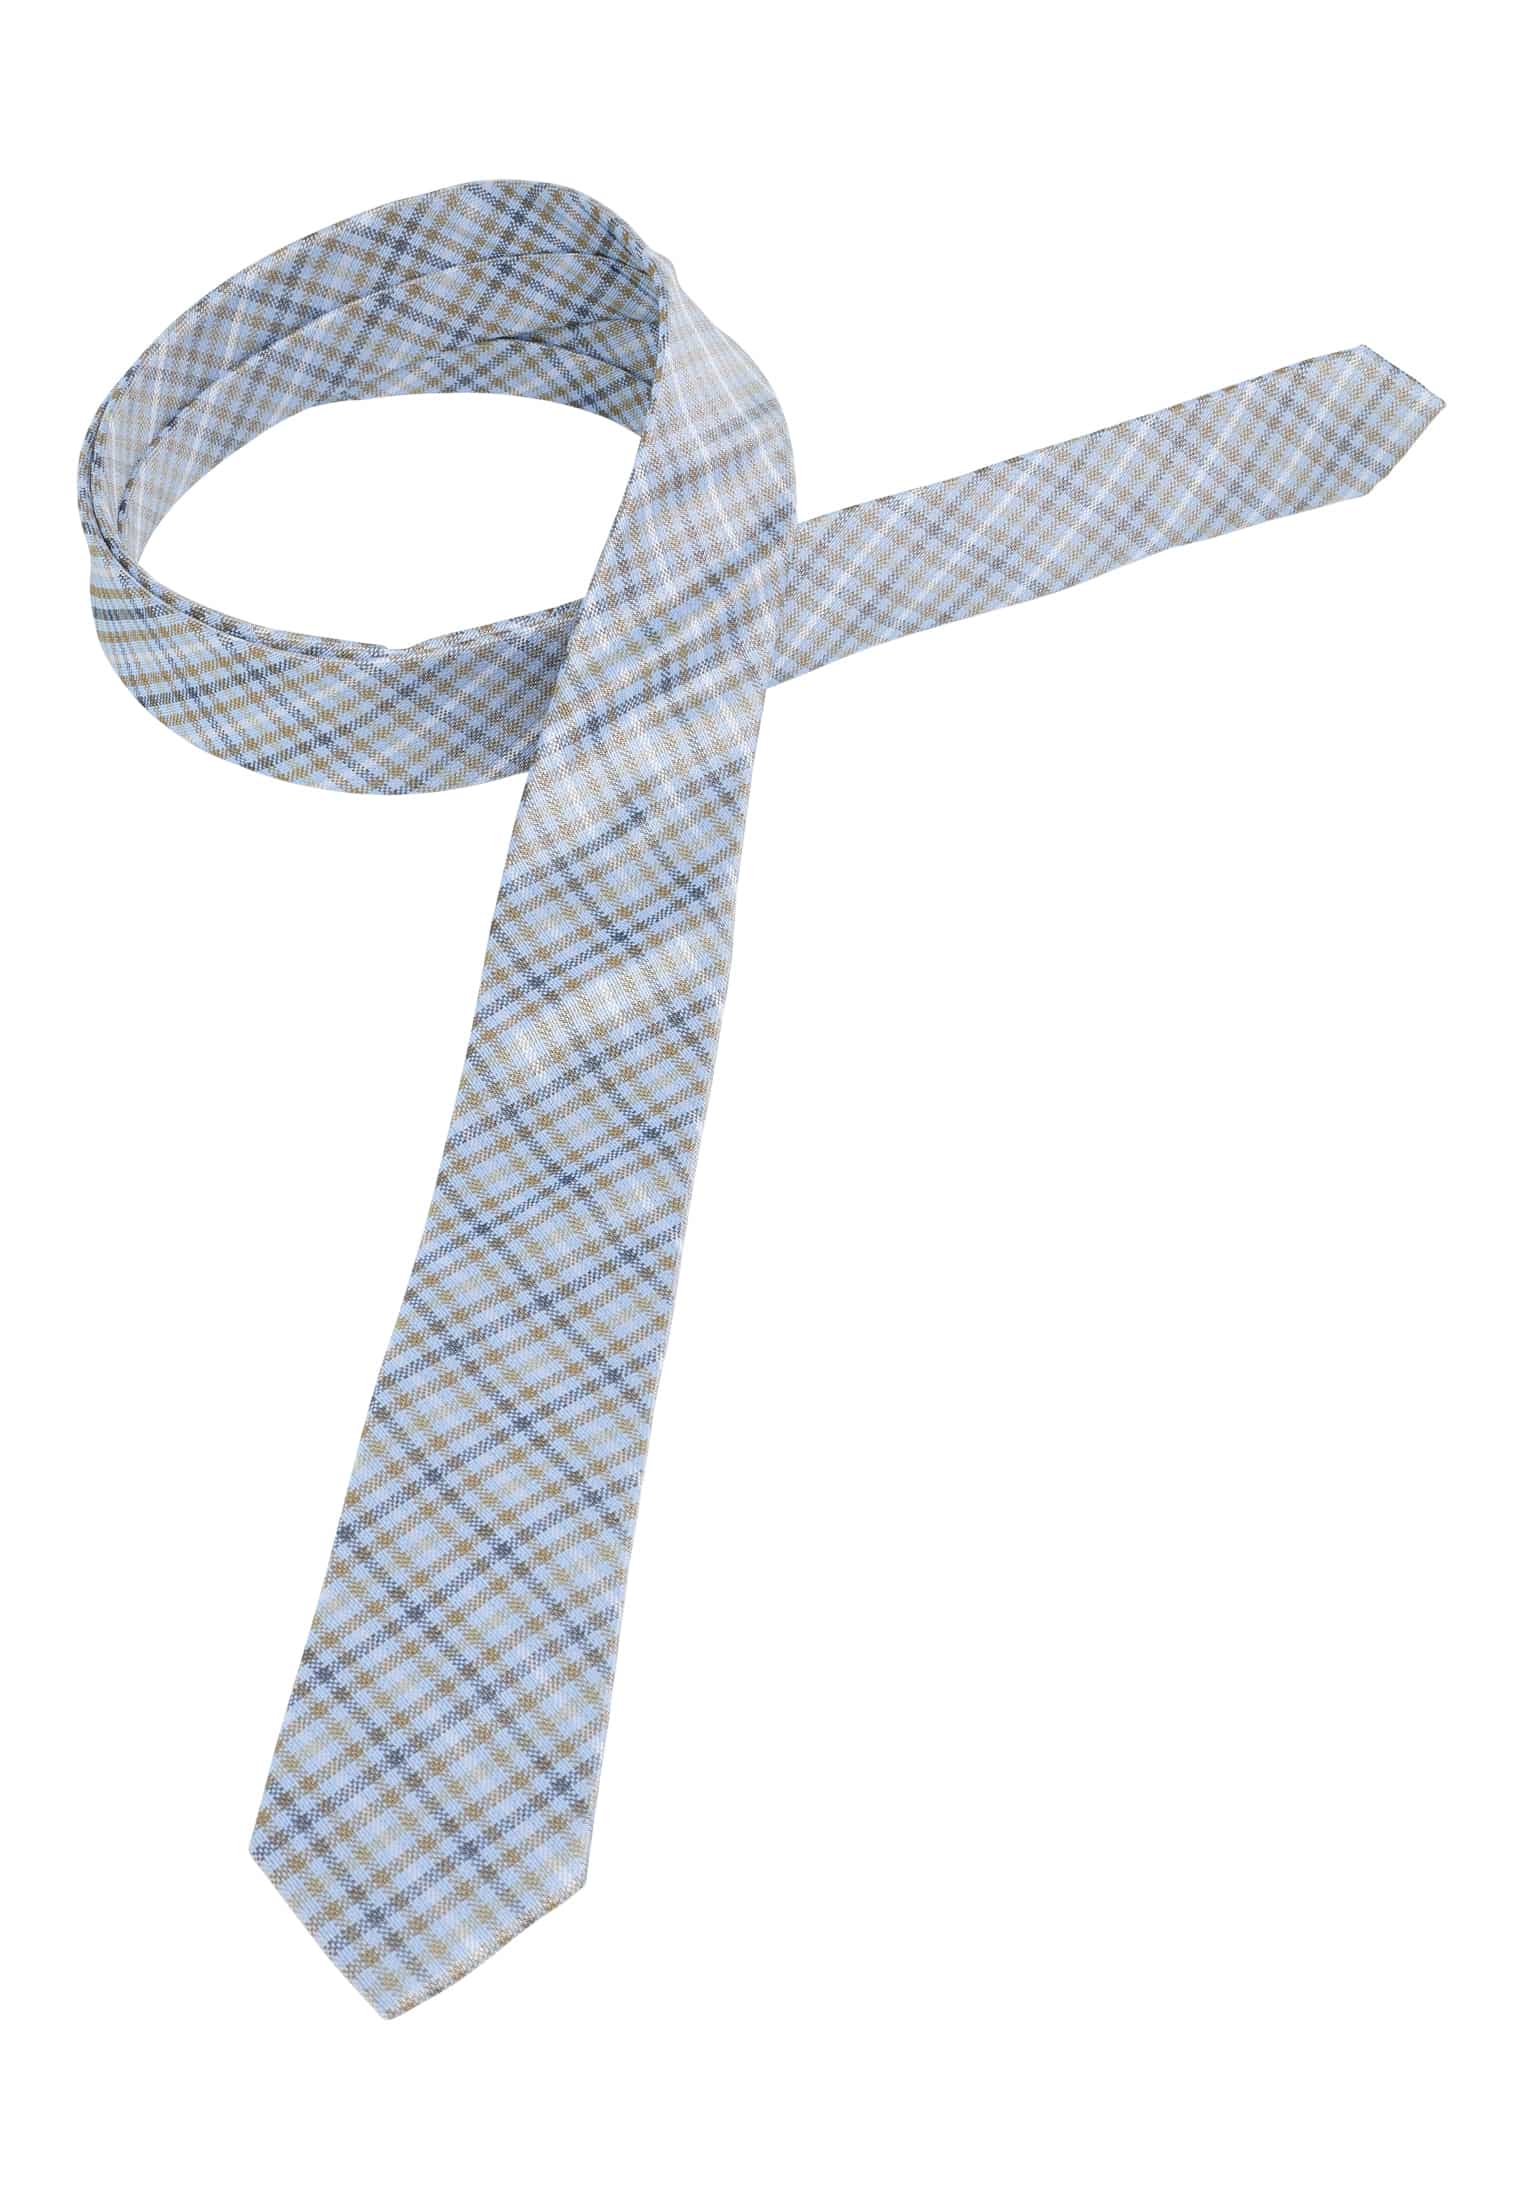 Krawatte in blau/grün kariert | blau/grün | 142 | 1AC01998-81-48-142